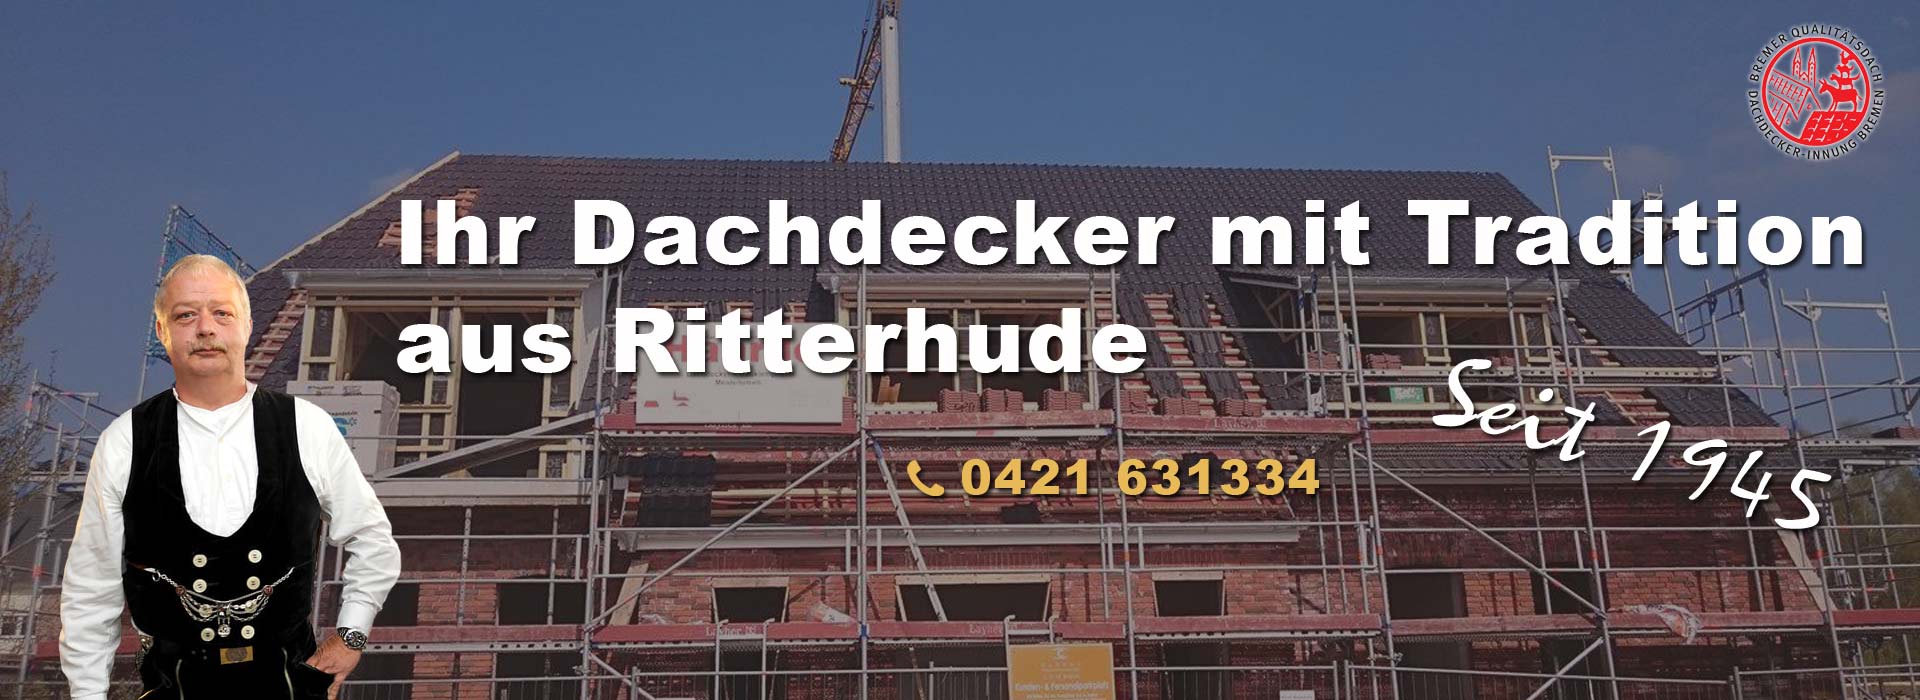 Dachdecker mit Tradition - Ihre Bedachungsgesellschaft Haarde GmbH & Co. KG